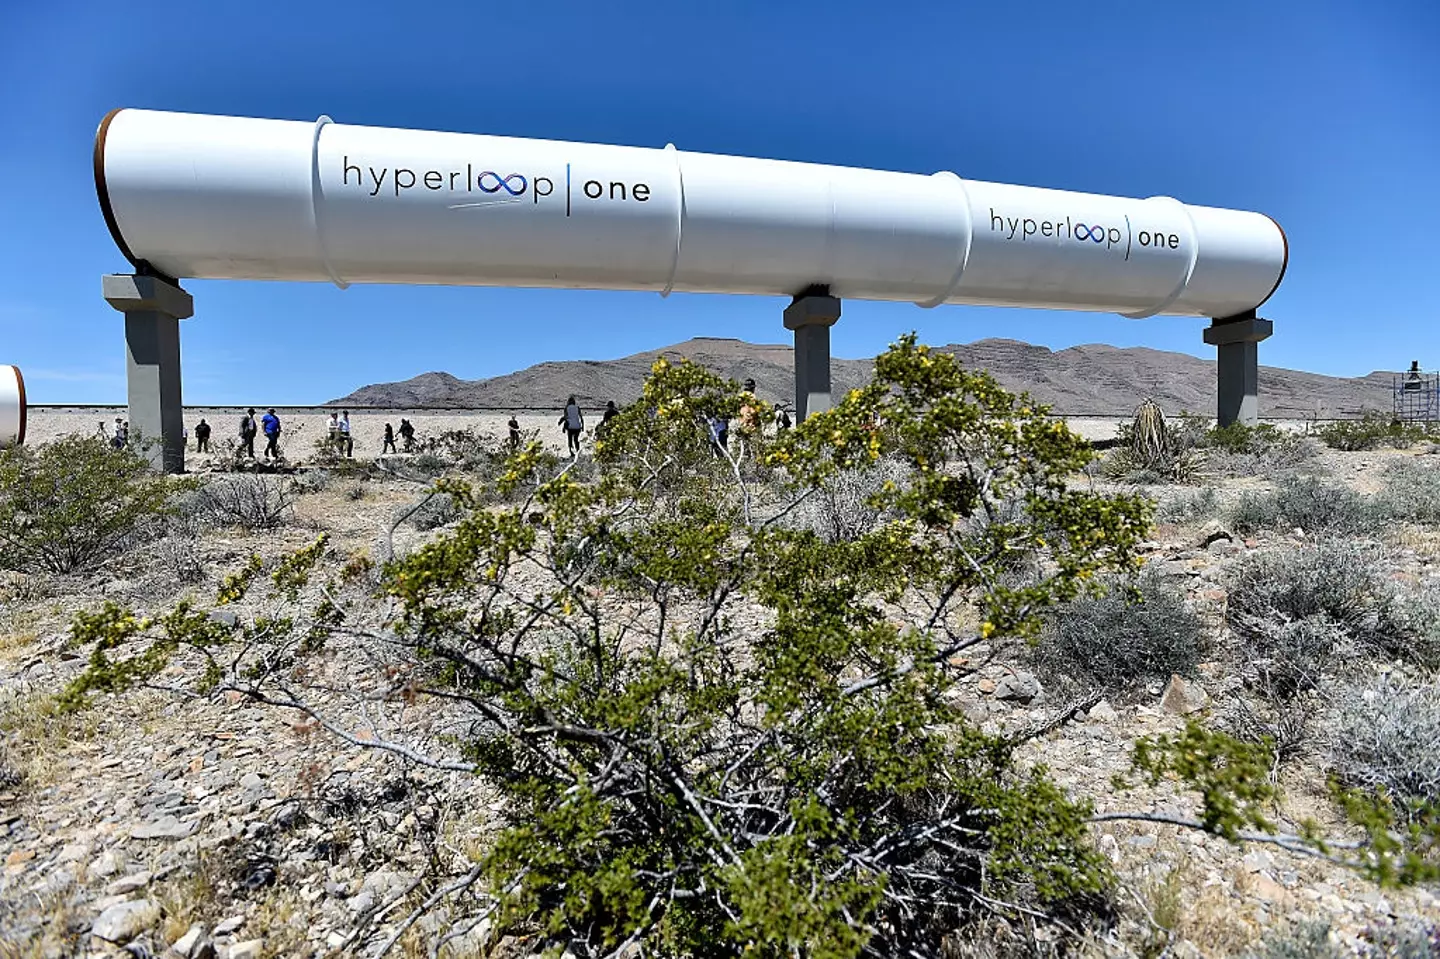 Hyperloop One has now shut down.